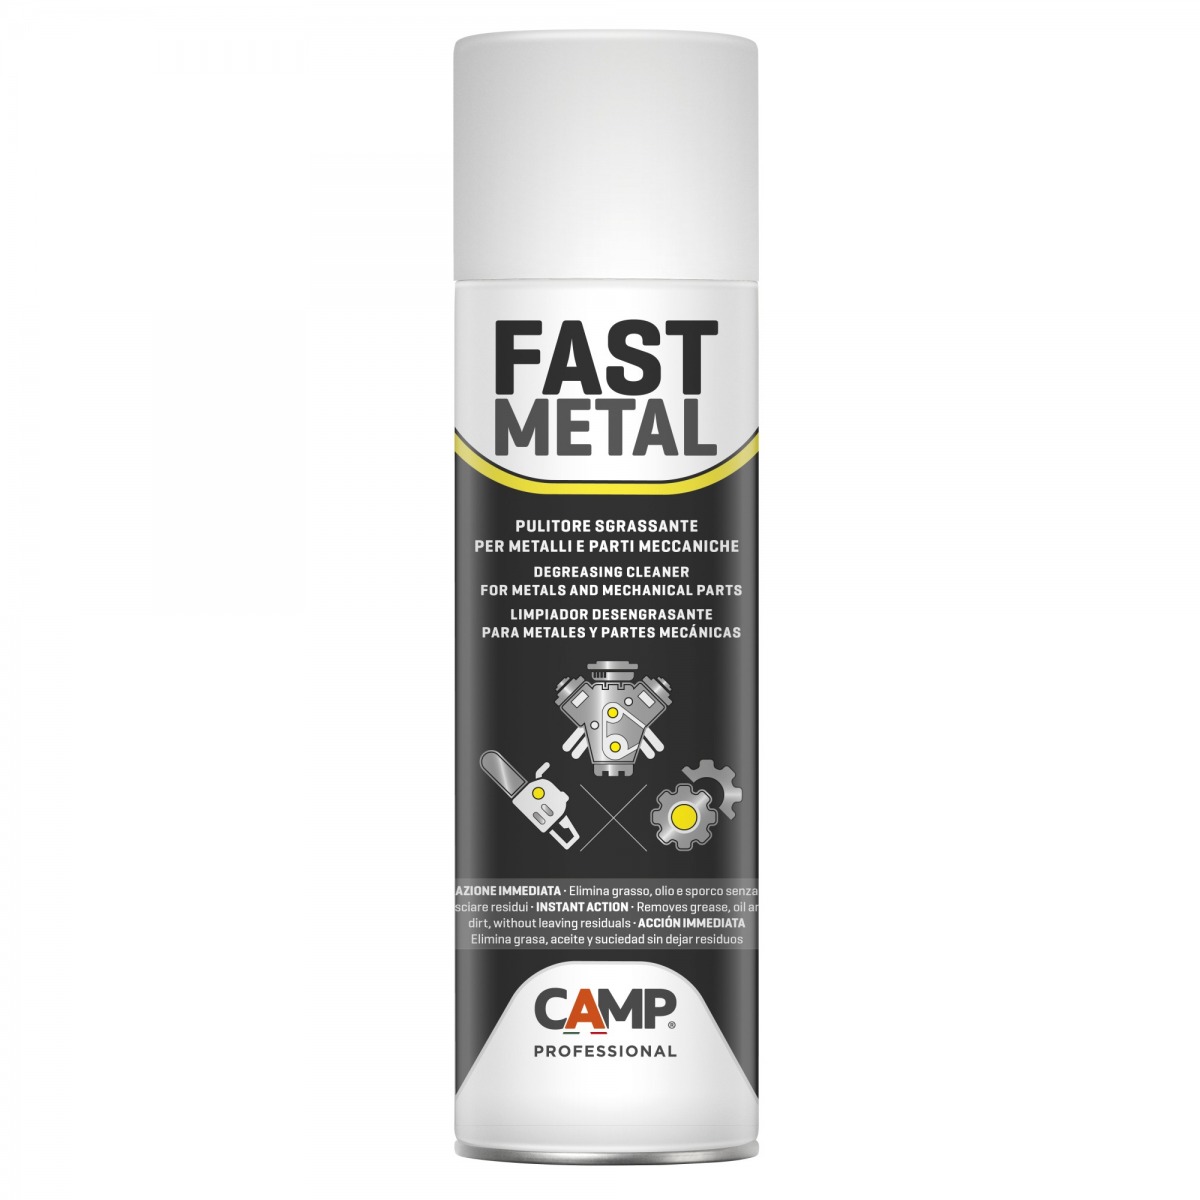 Limpiador desengrasante para metales y piezas mecánicas FAST METAL CAM-1143-500 | QUÍMICOS